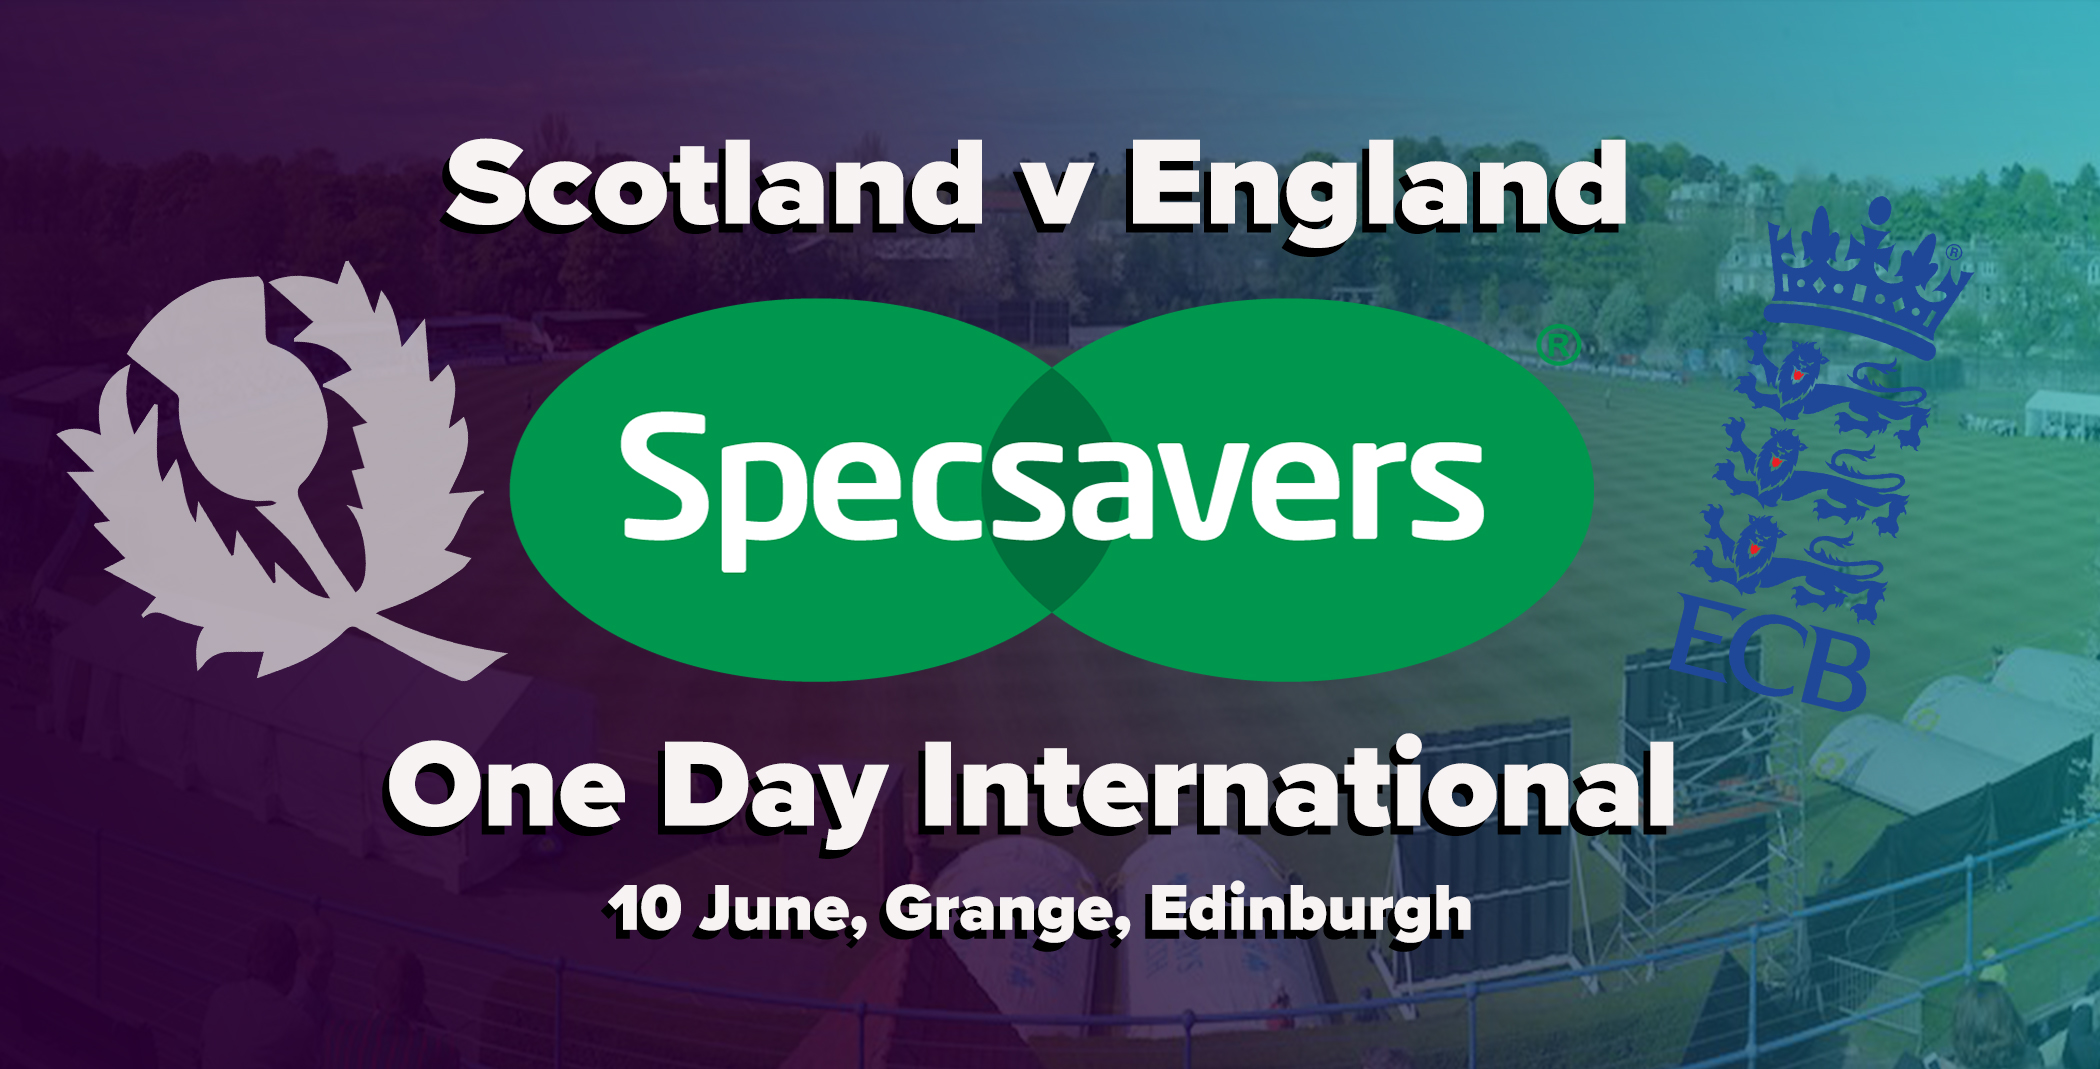 Specsavers to sponsor Scotland v England ODI